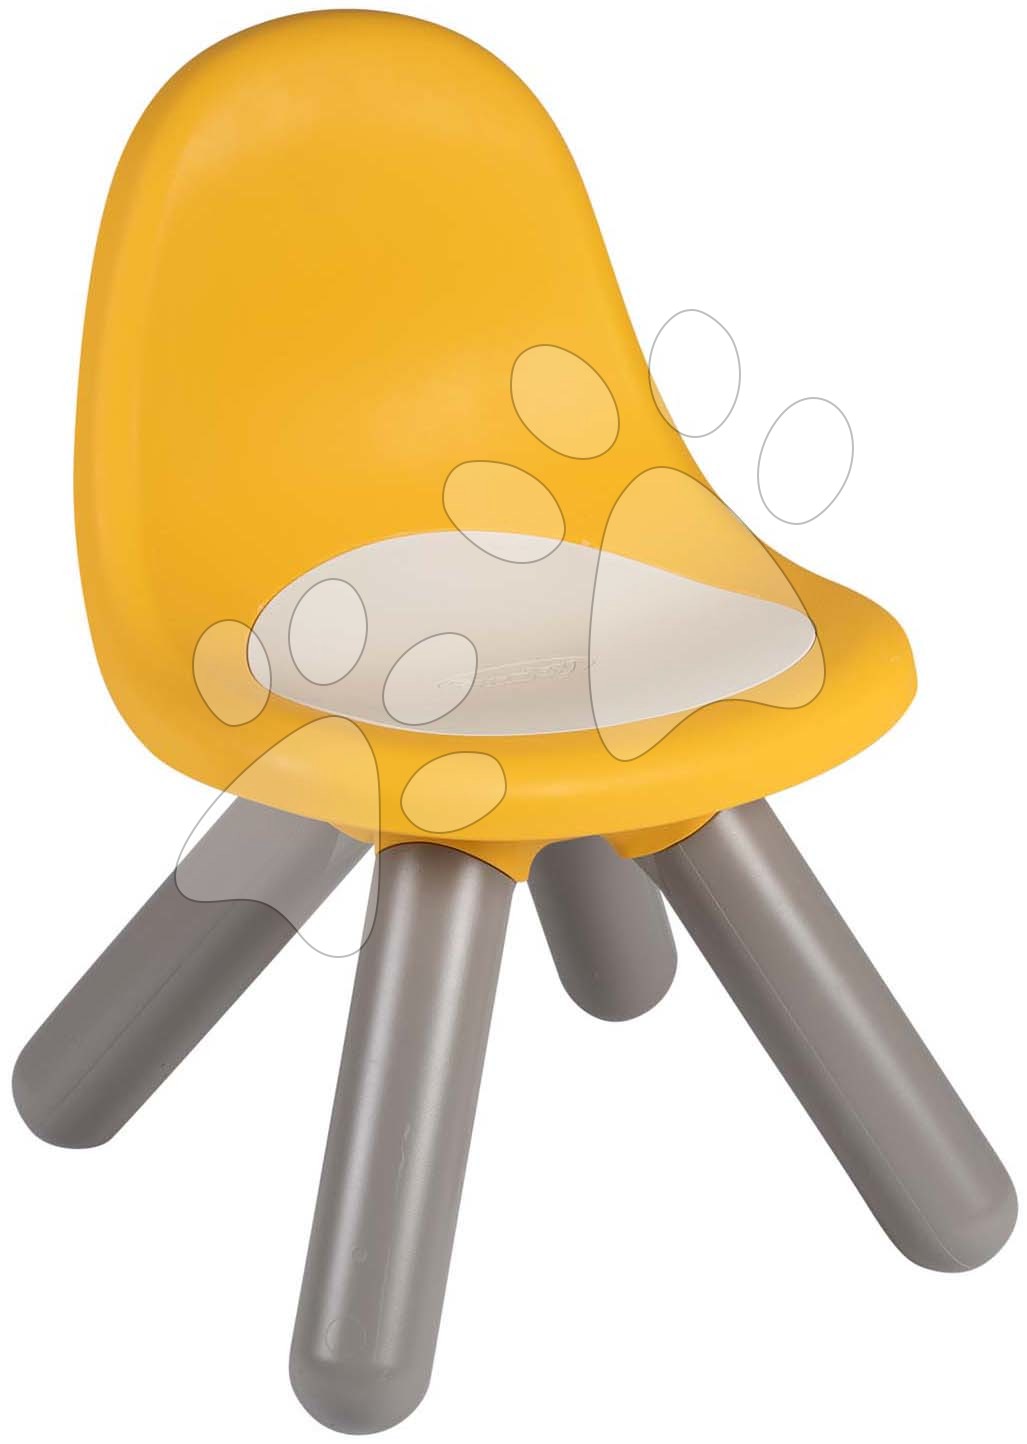 Židle pro děti Kid Chair Yellow Smoby žlutá s UV filtrem o nosnosti 50 kg výška sedáku 27 cm od 18 měsíců